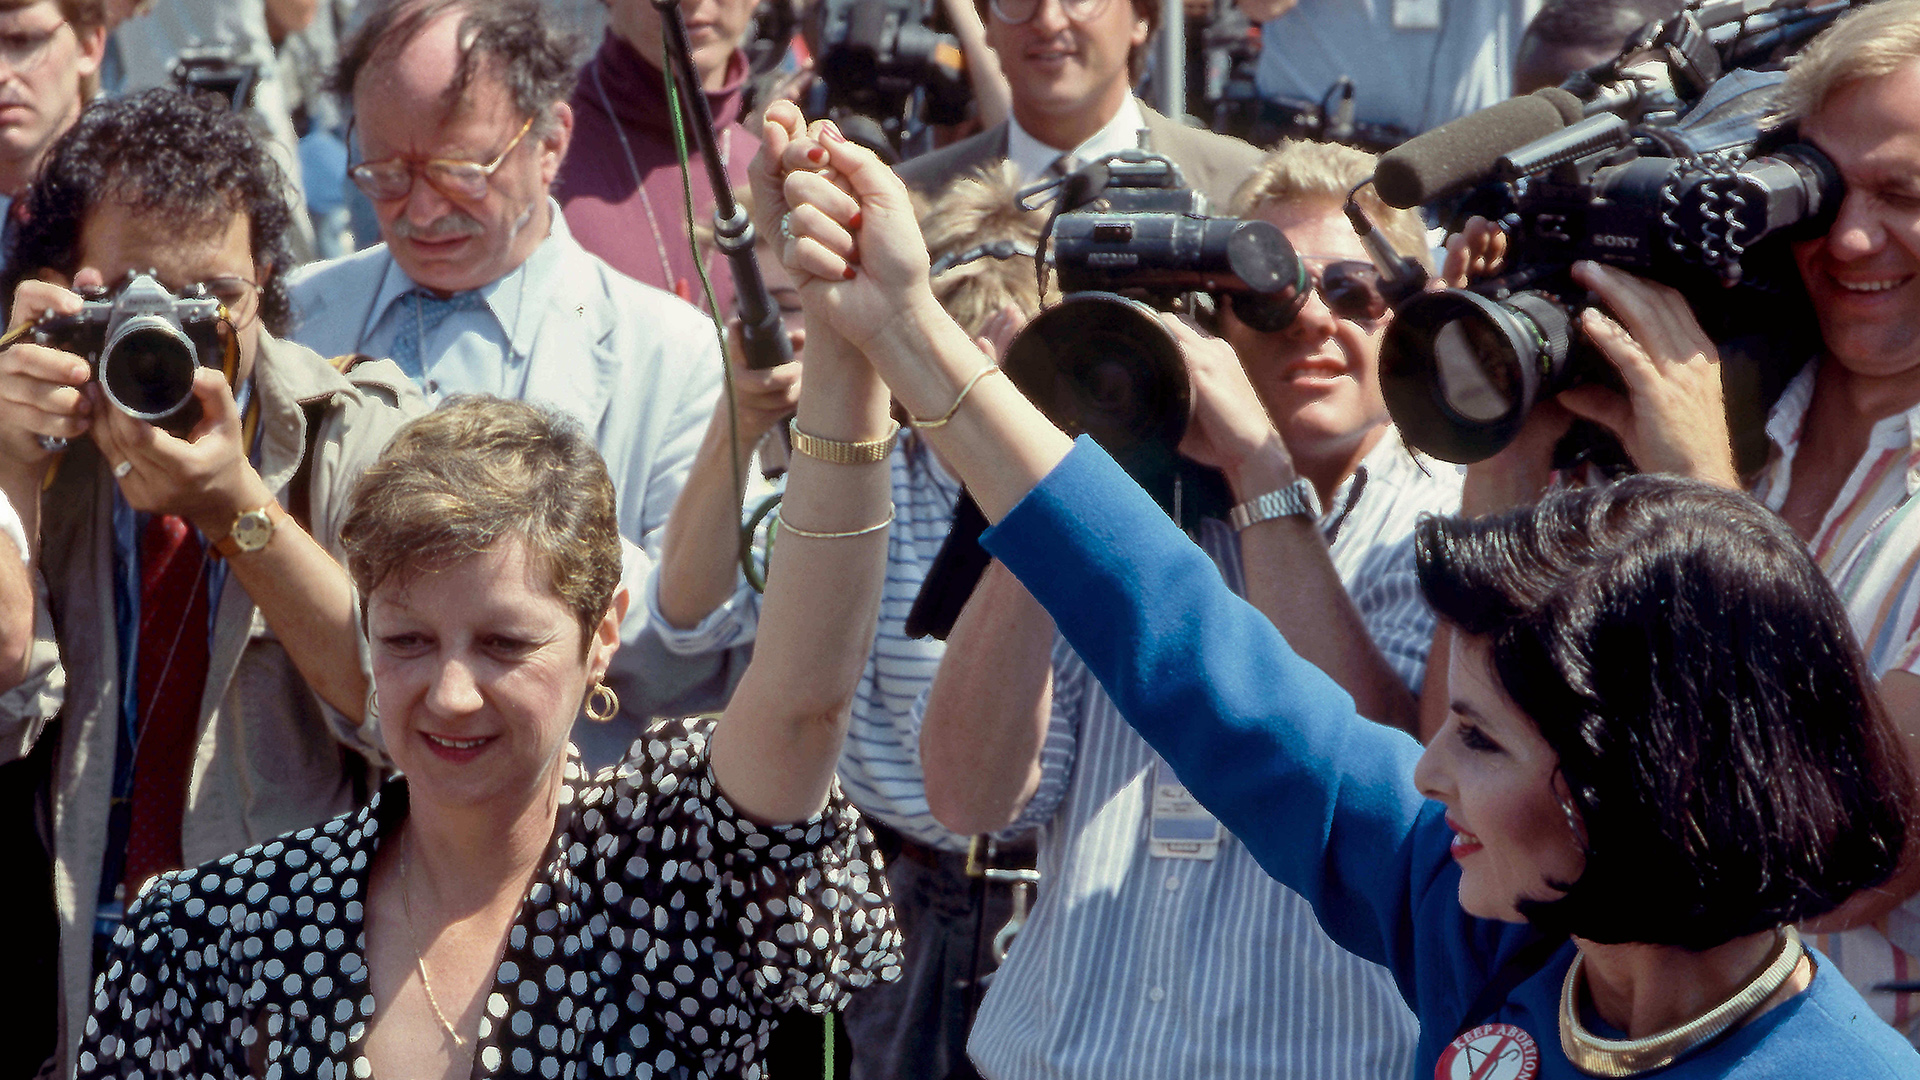 Ein Archivfoto vom 26.04.1989 zeigt Norma McCorvey (Pseudonym Jane Roe) mit ihrer Anwältin Gloria bei einer Protest-Demonstration vor dem Obersten Gericht in Washington, USA.  | picture alliance / Mark Reinstei